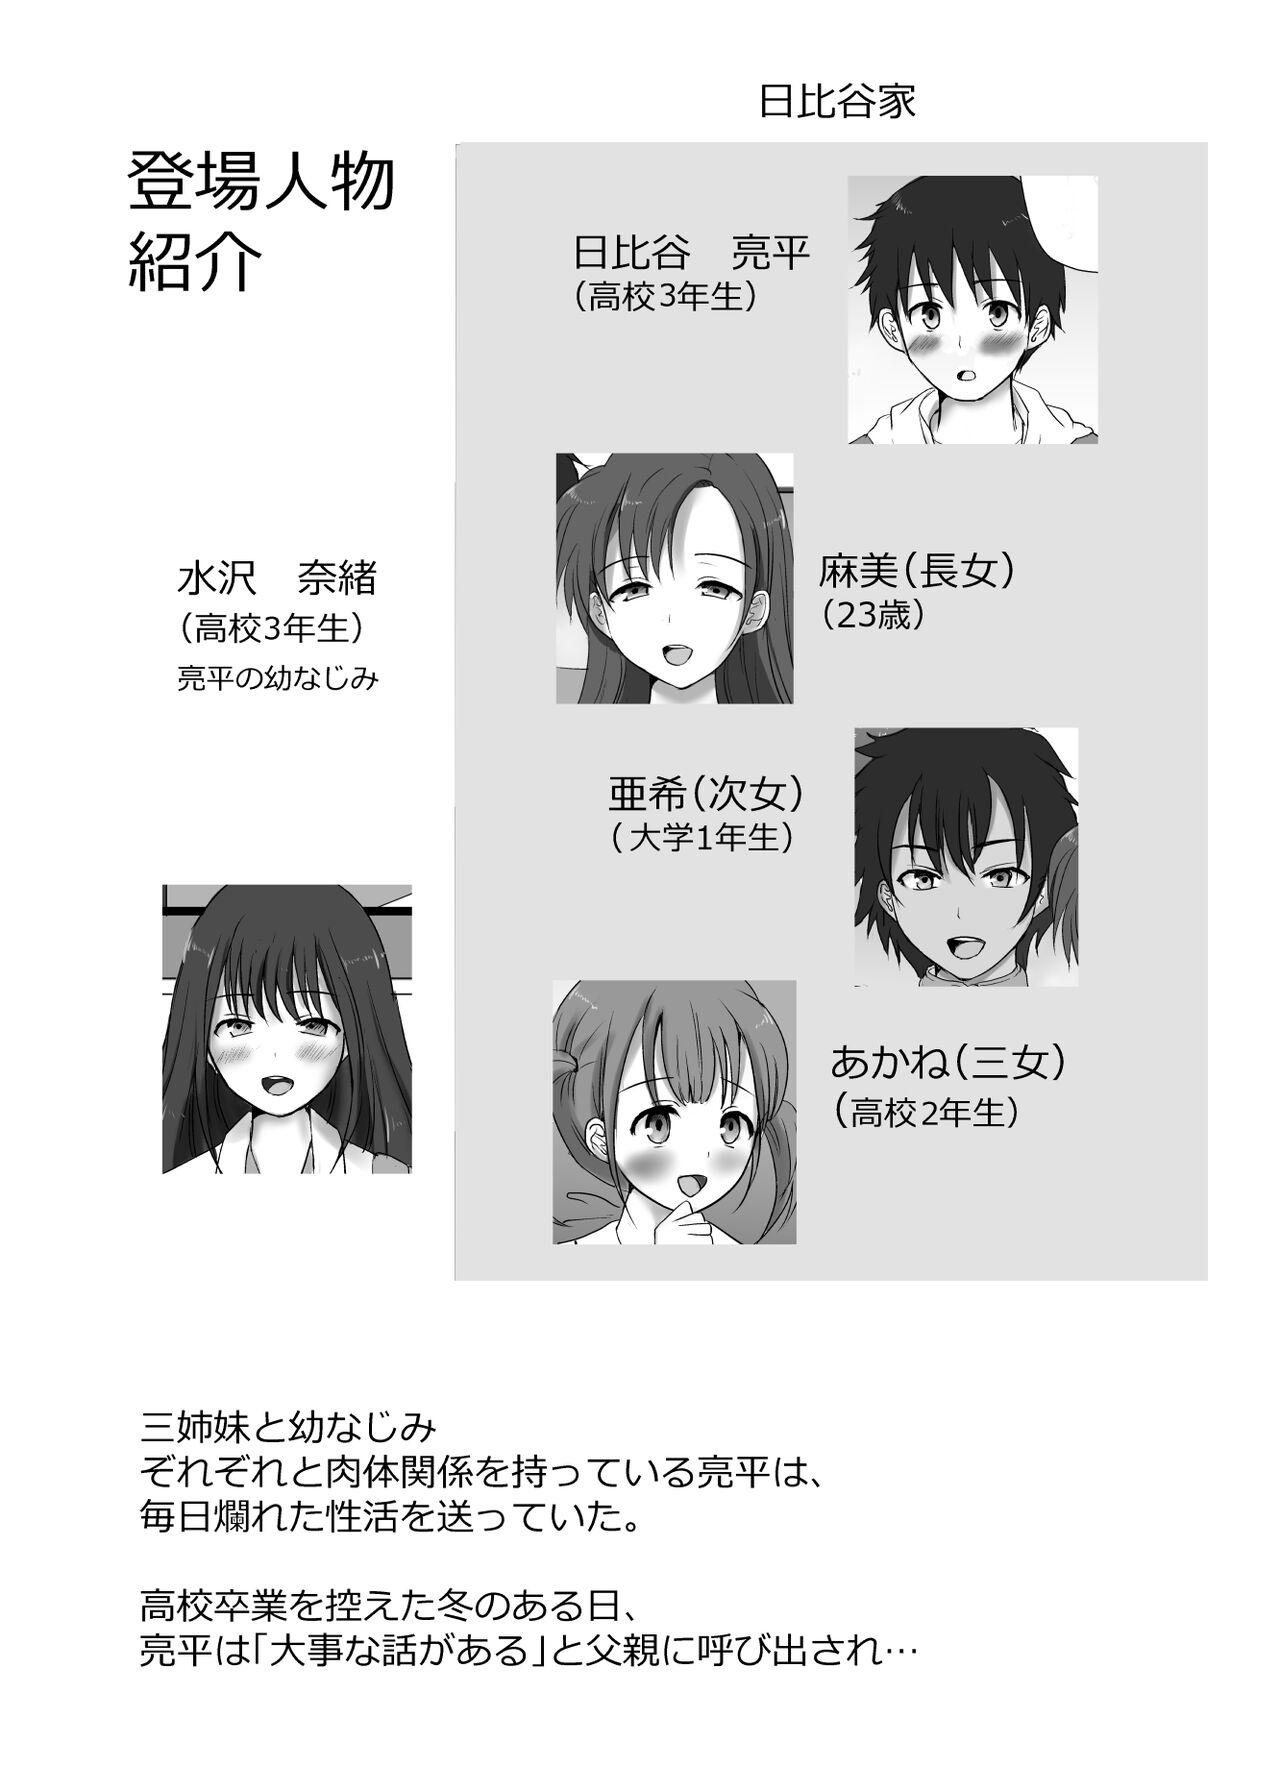 Cutie 僕と三姉妹+1 - Original Behind - Page 4